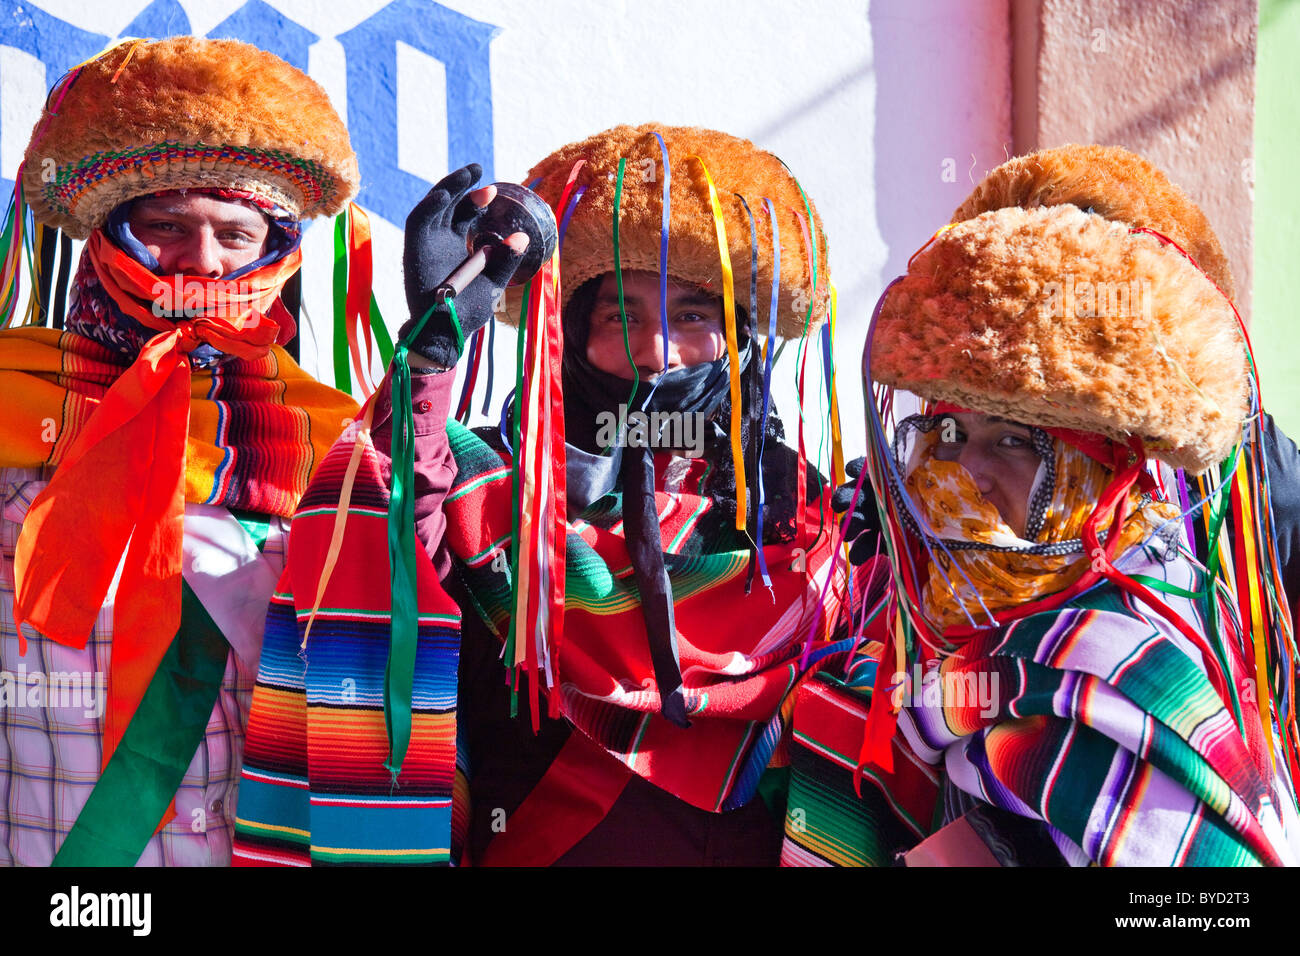 Parachicos at the Fiesta Grande or the Grand Festival, Chiapa De Corzo, Chiapas, Mexico Stock Photo